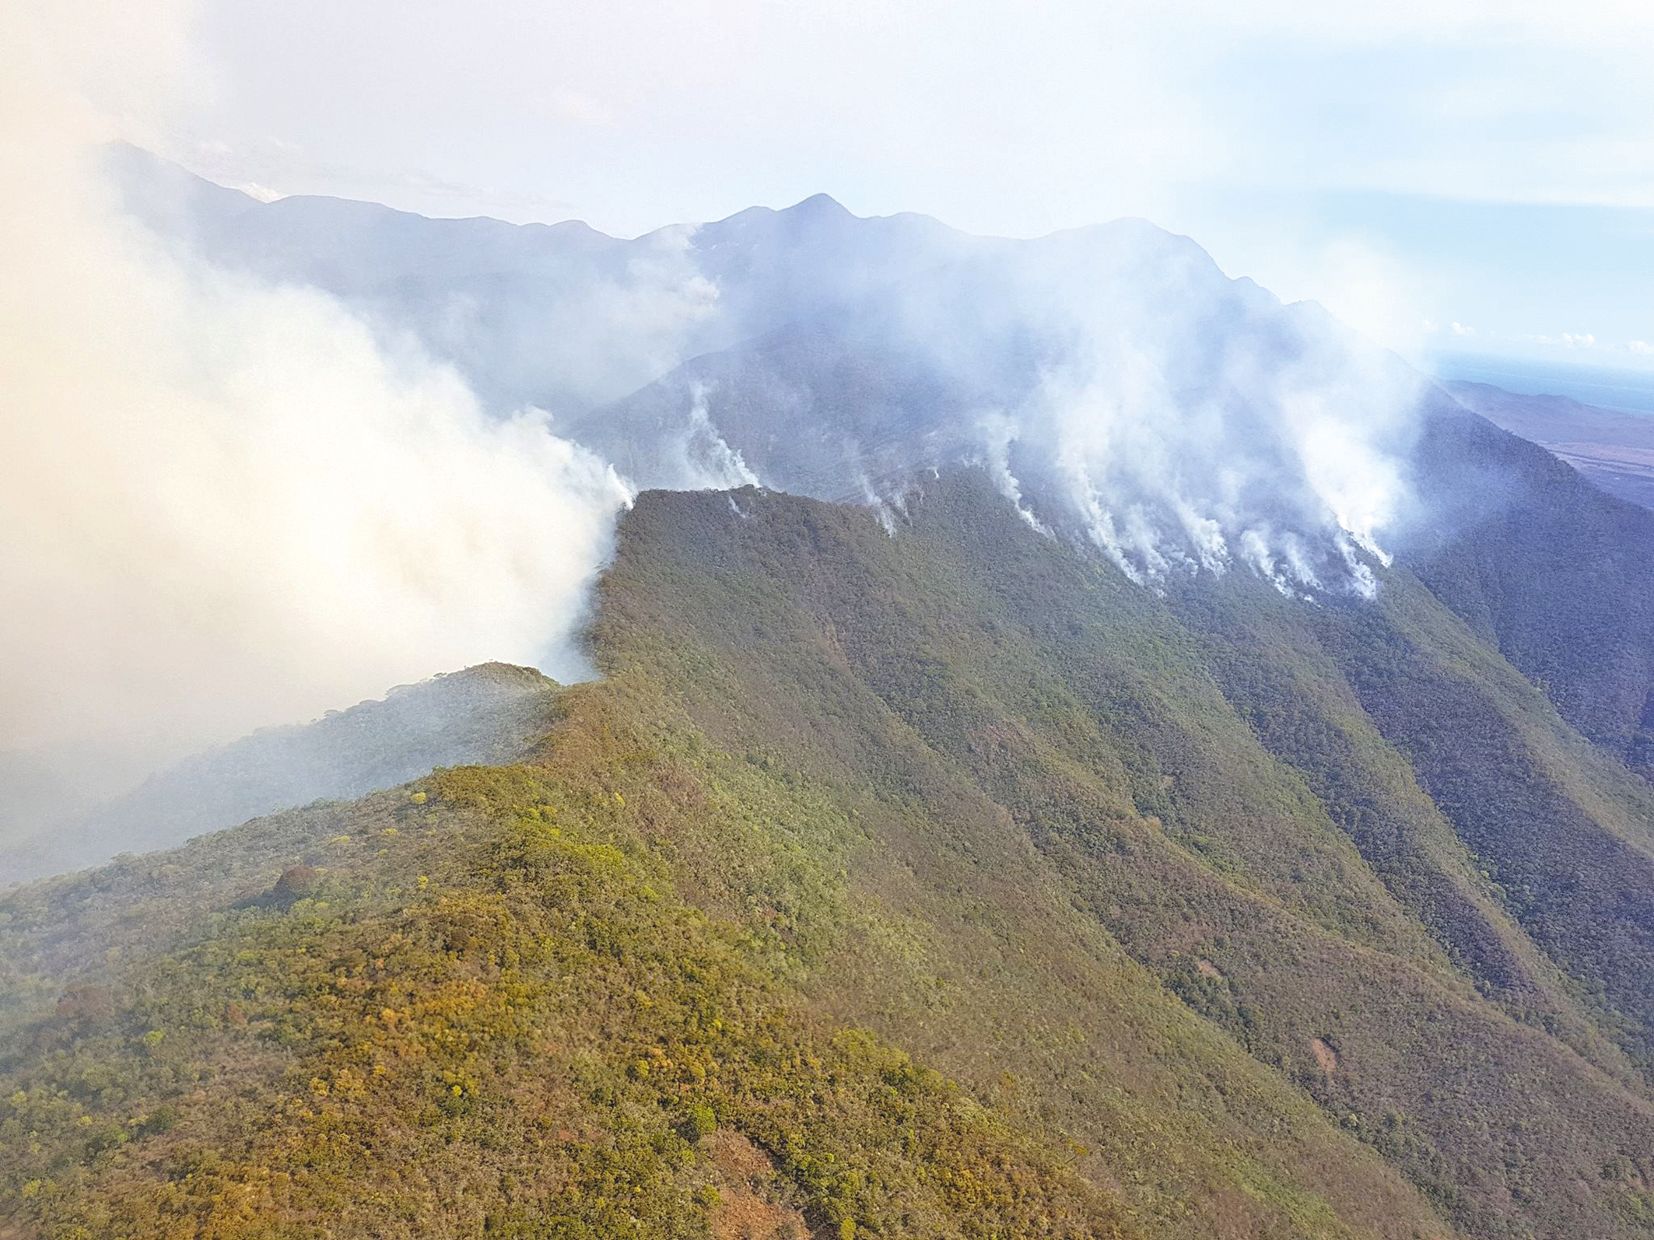 La fumée visible ce week-end sur les crêtes de Tontouta. Si la vallée touchée n’a jamais été inventoriée, les botanistes savent que c’est une zone de biodiversité rare.